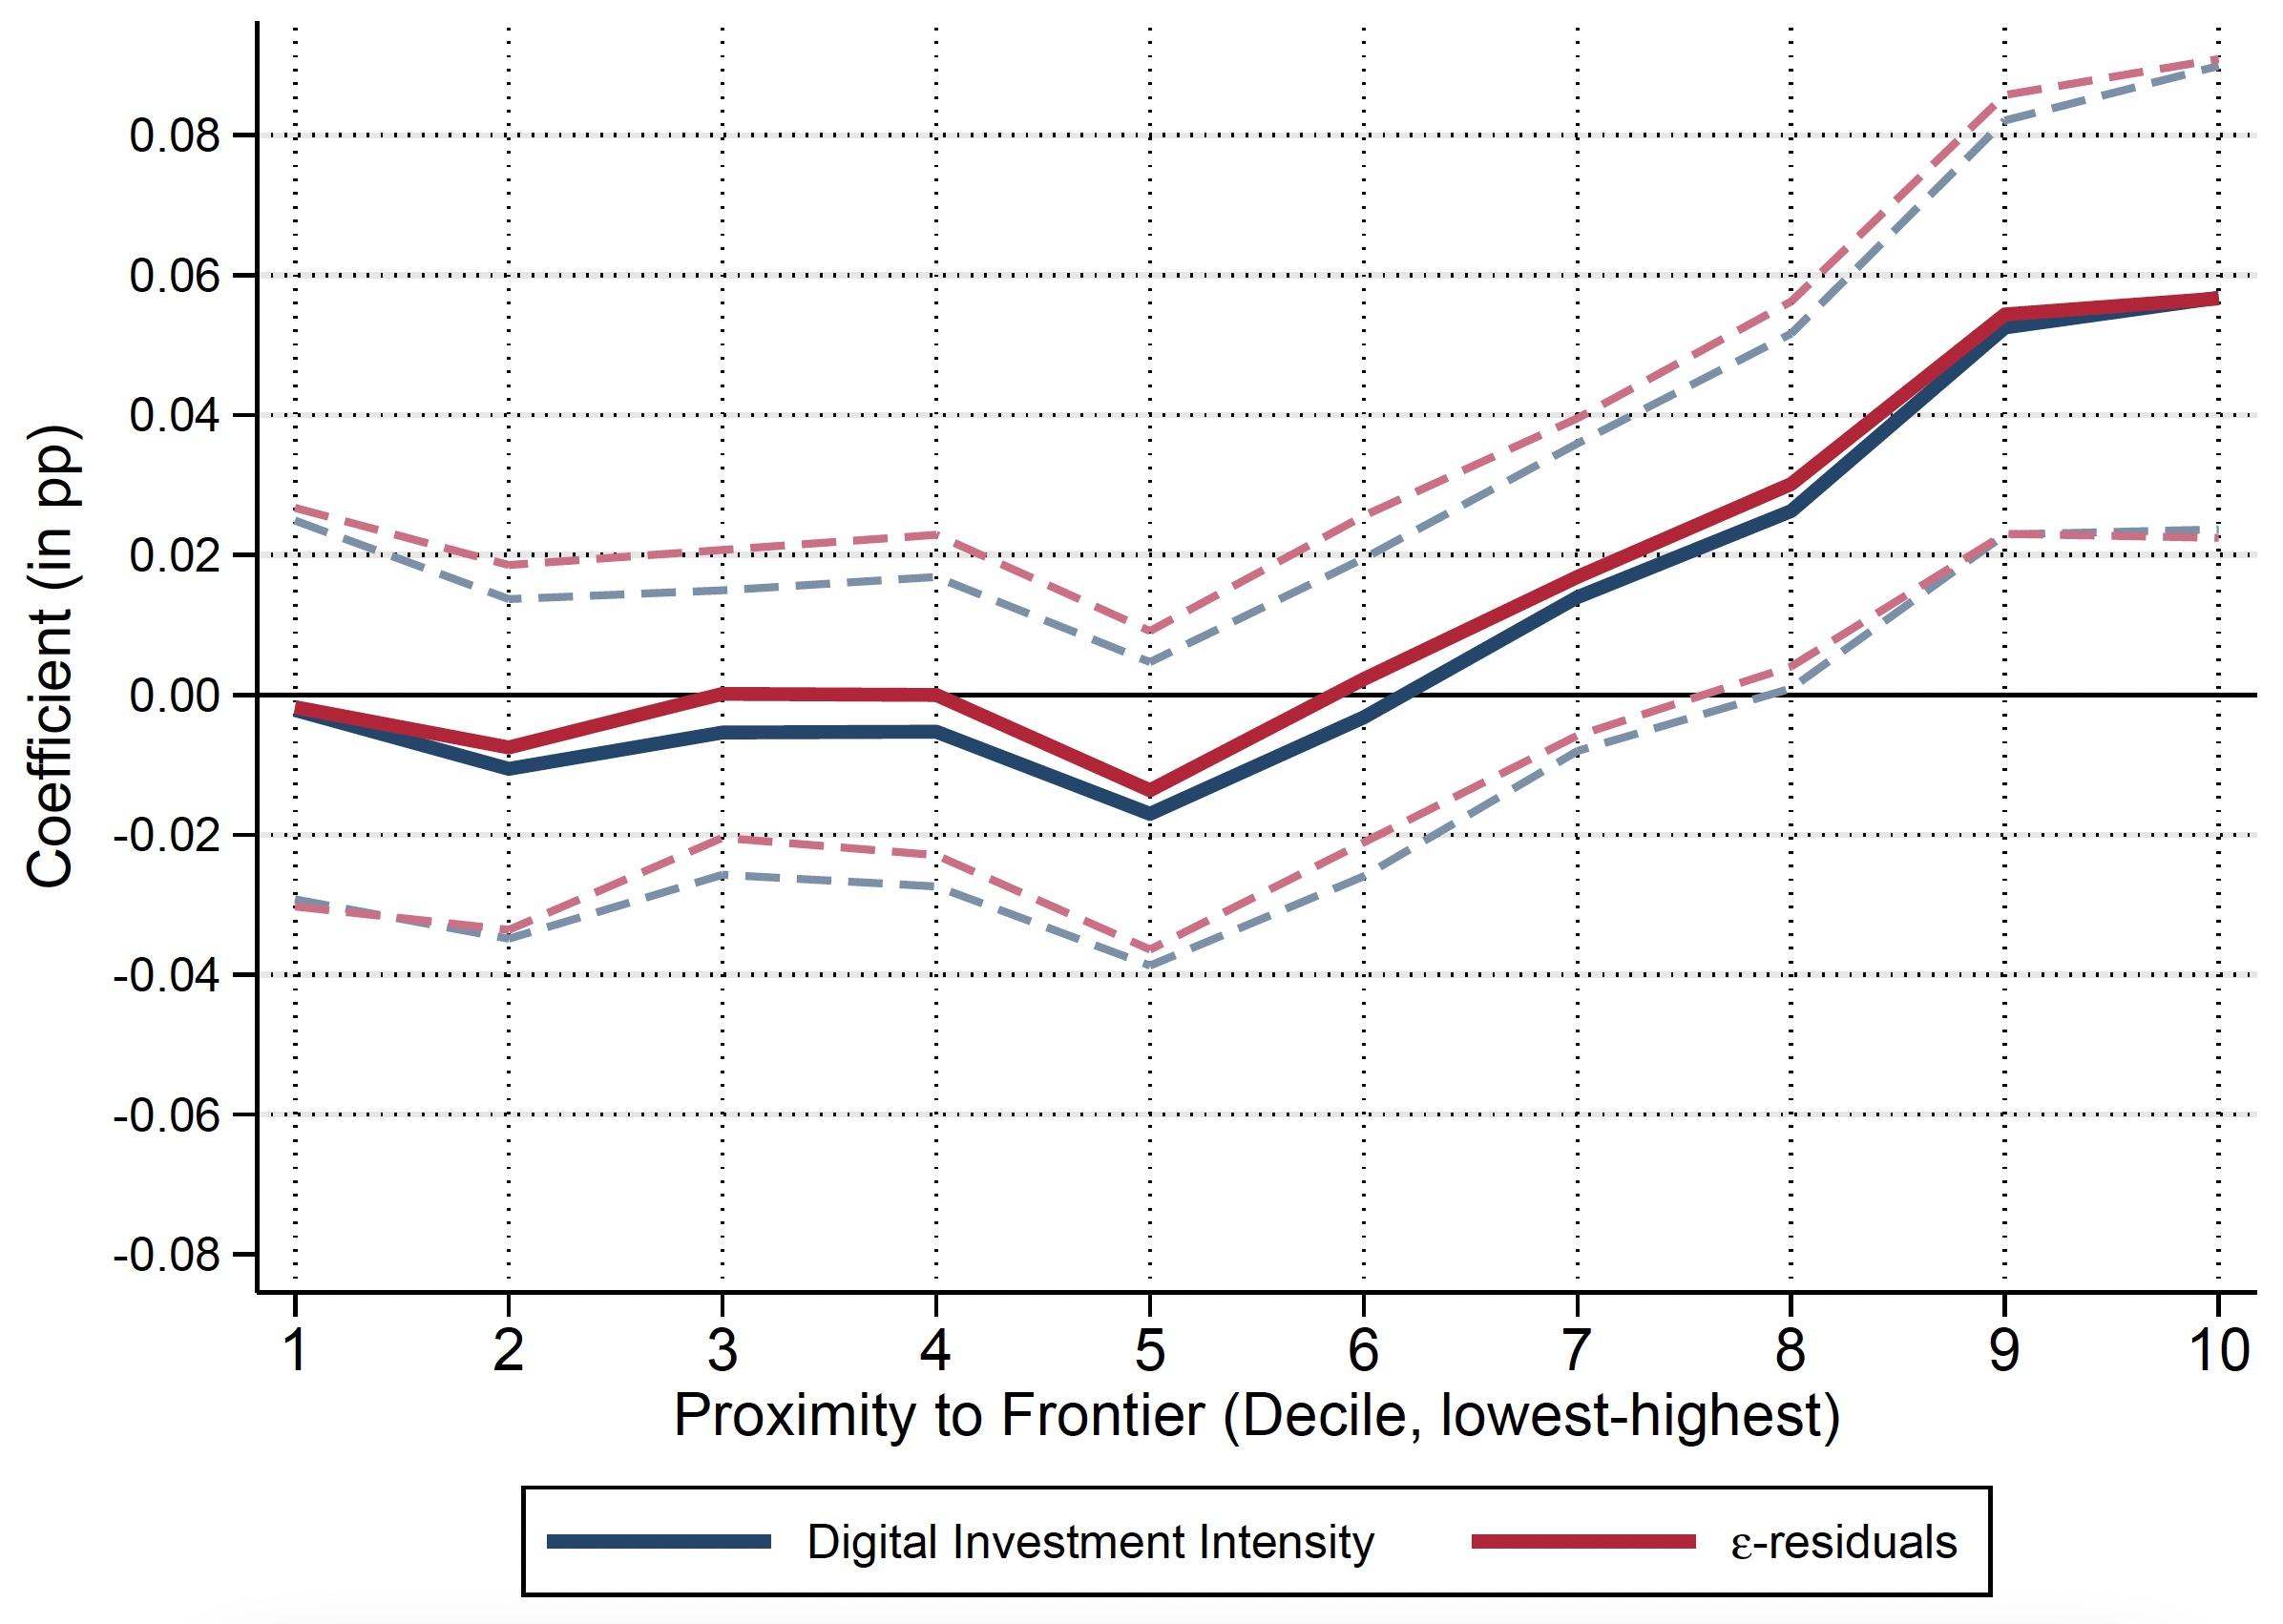 图2的边际影响数字化落后者的TFP增长接近前线